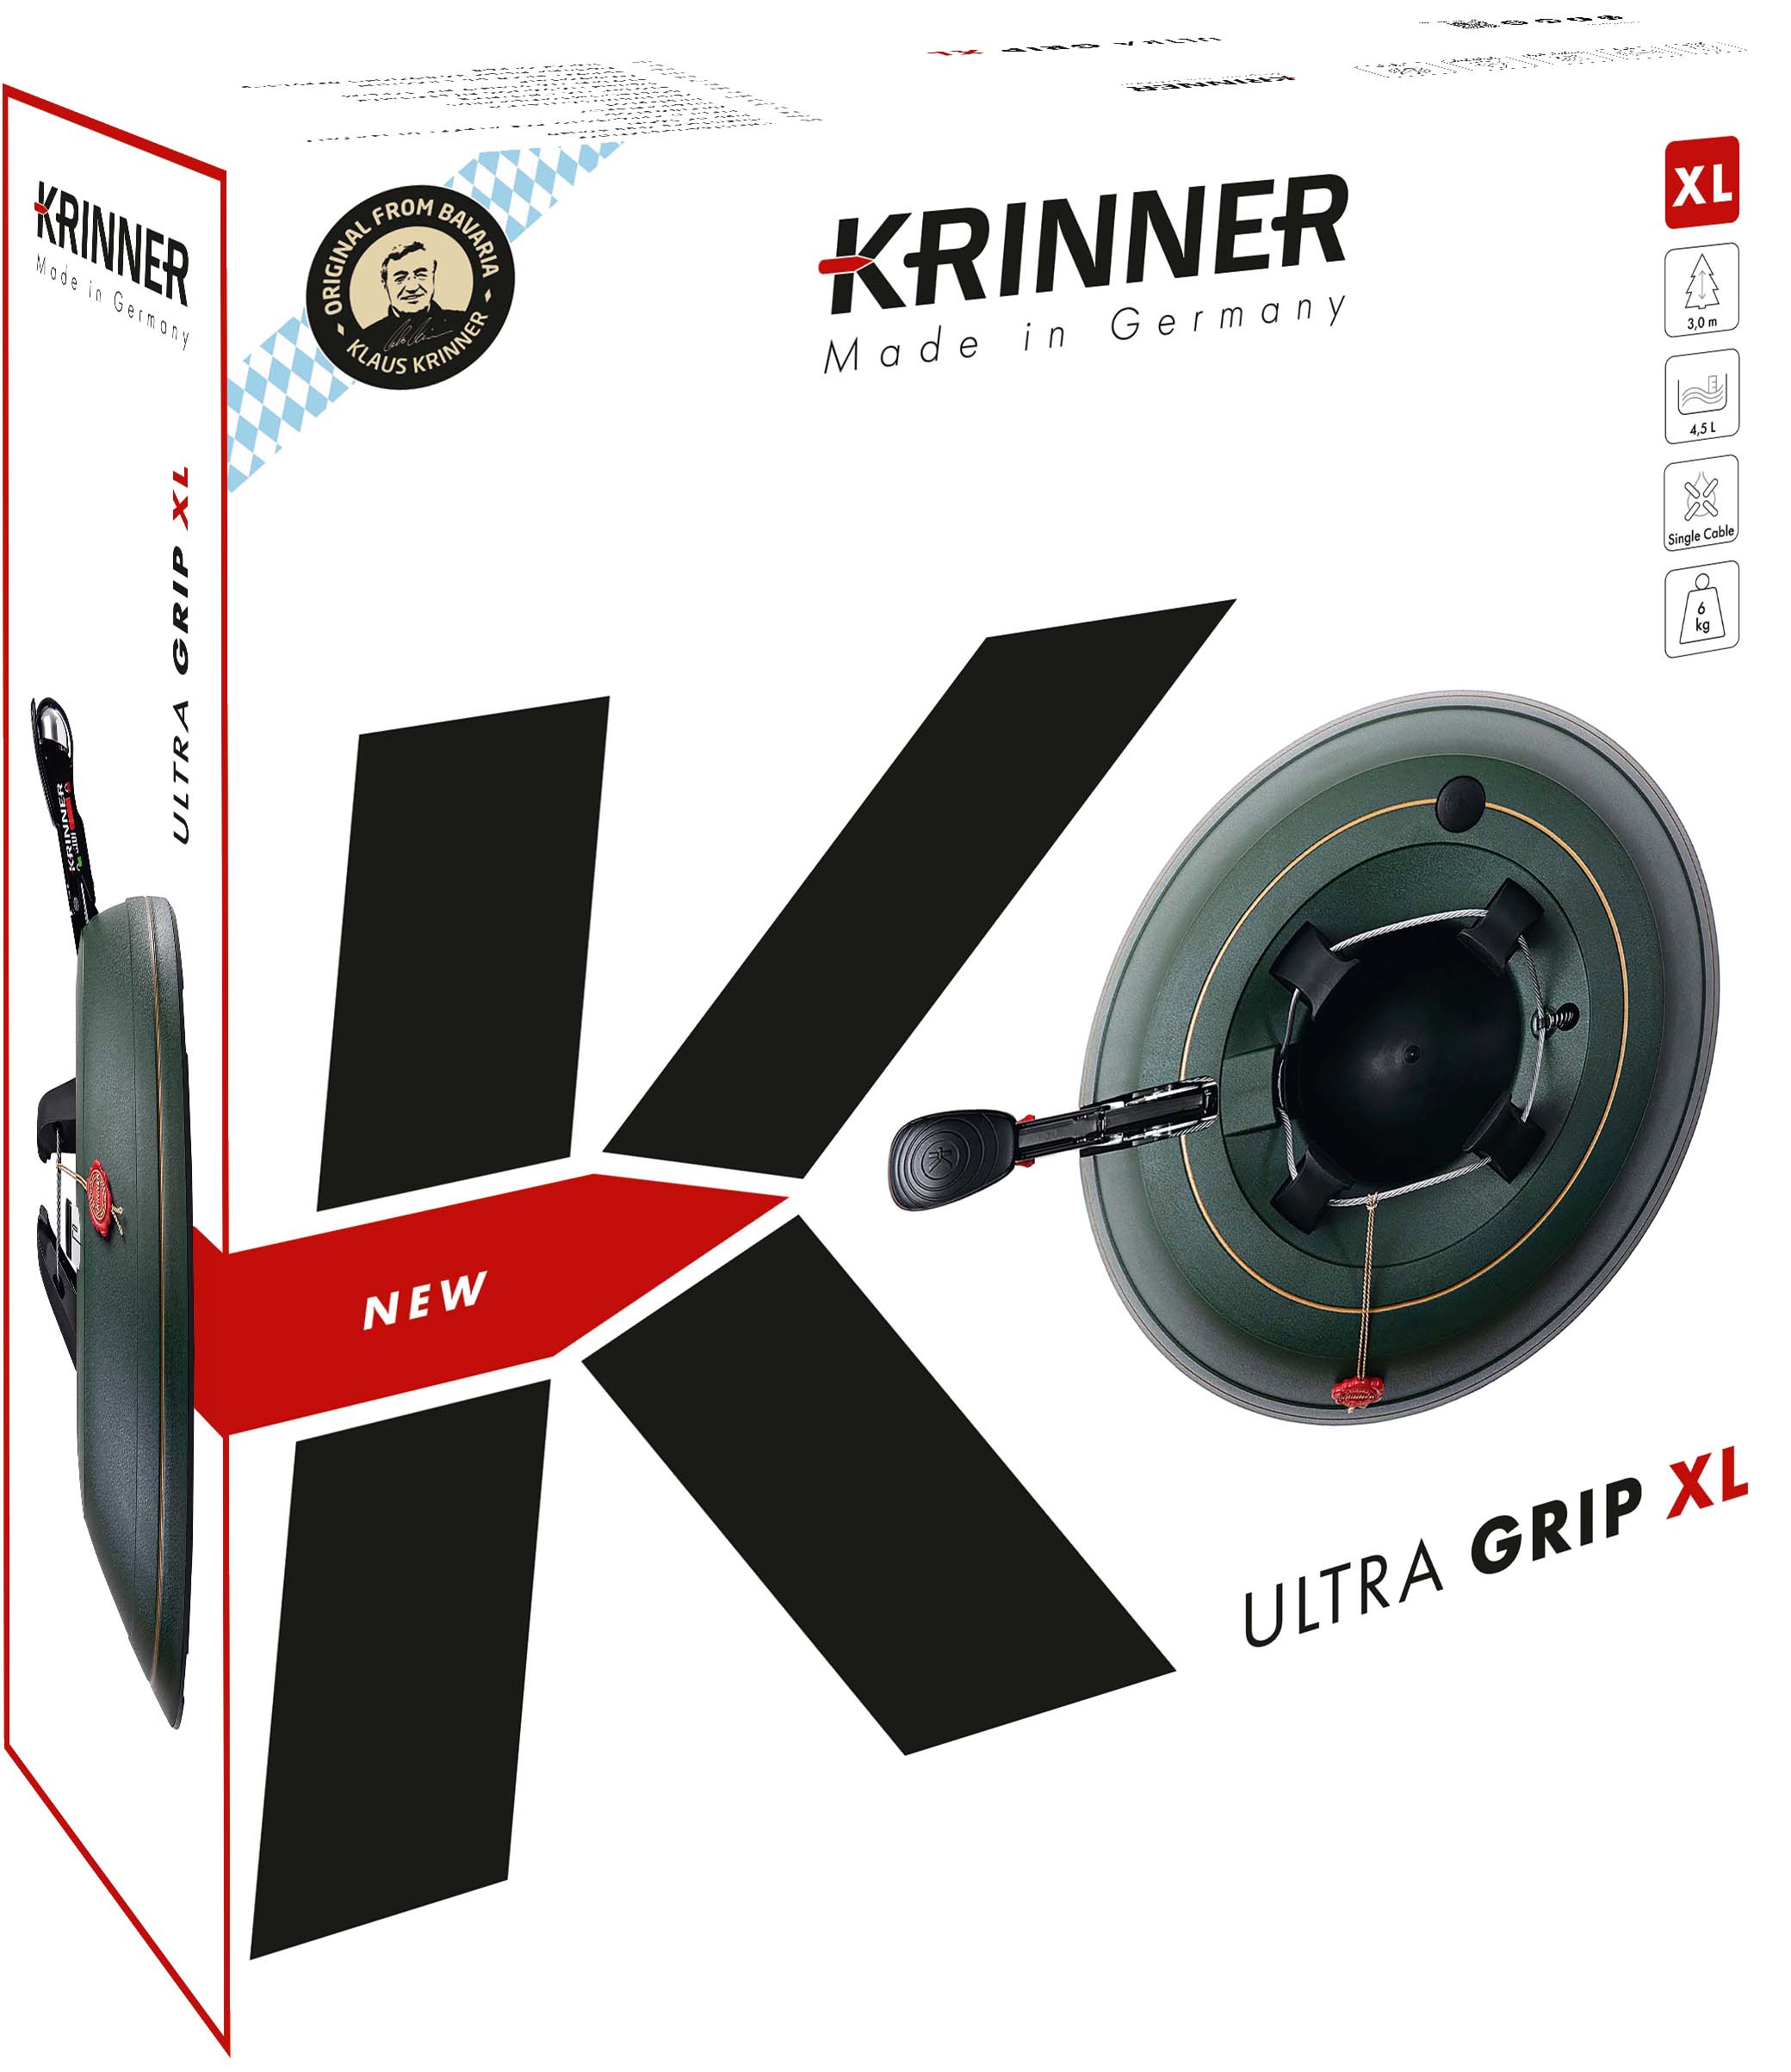 KRINNER Ultra Grip XL